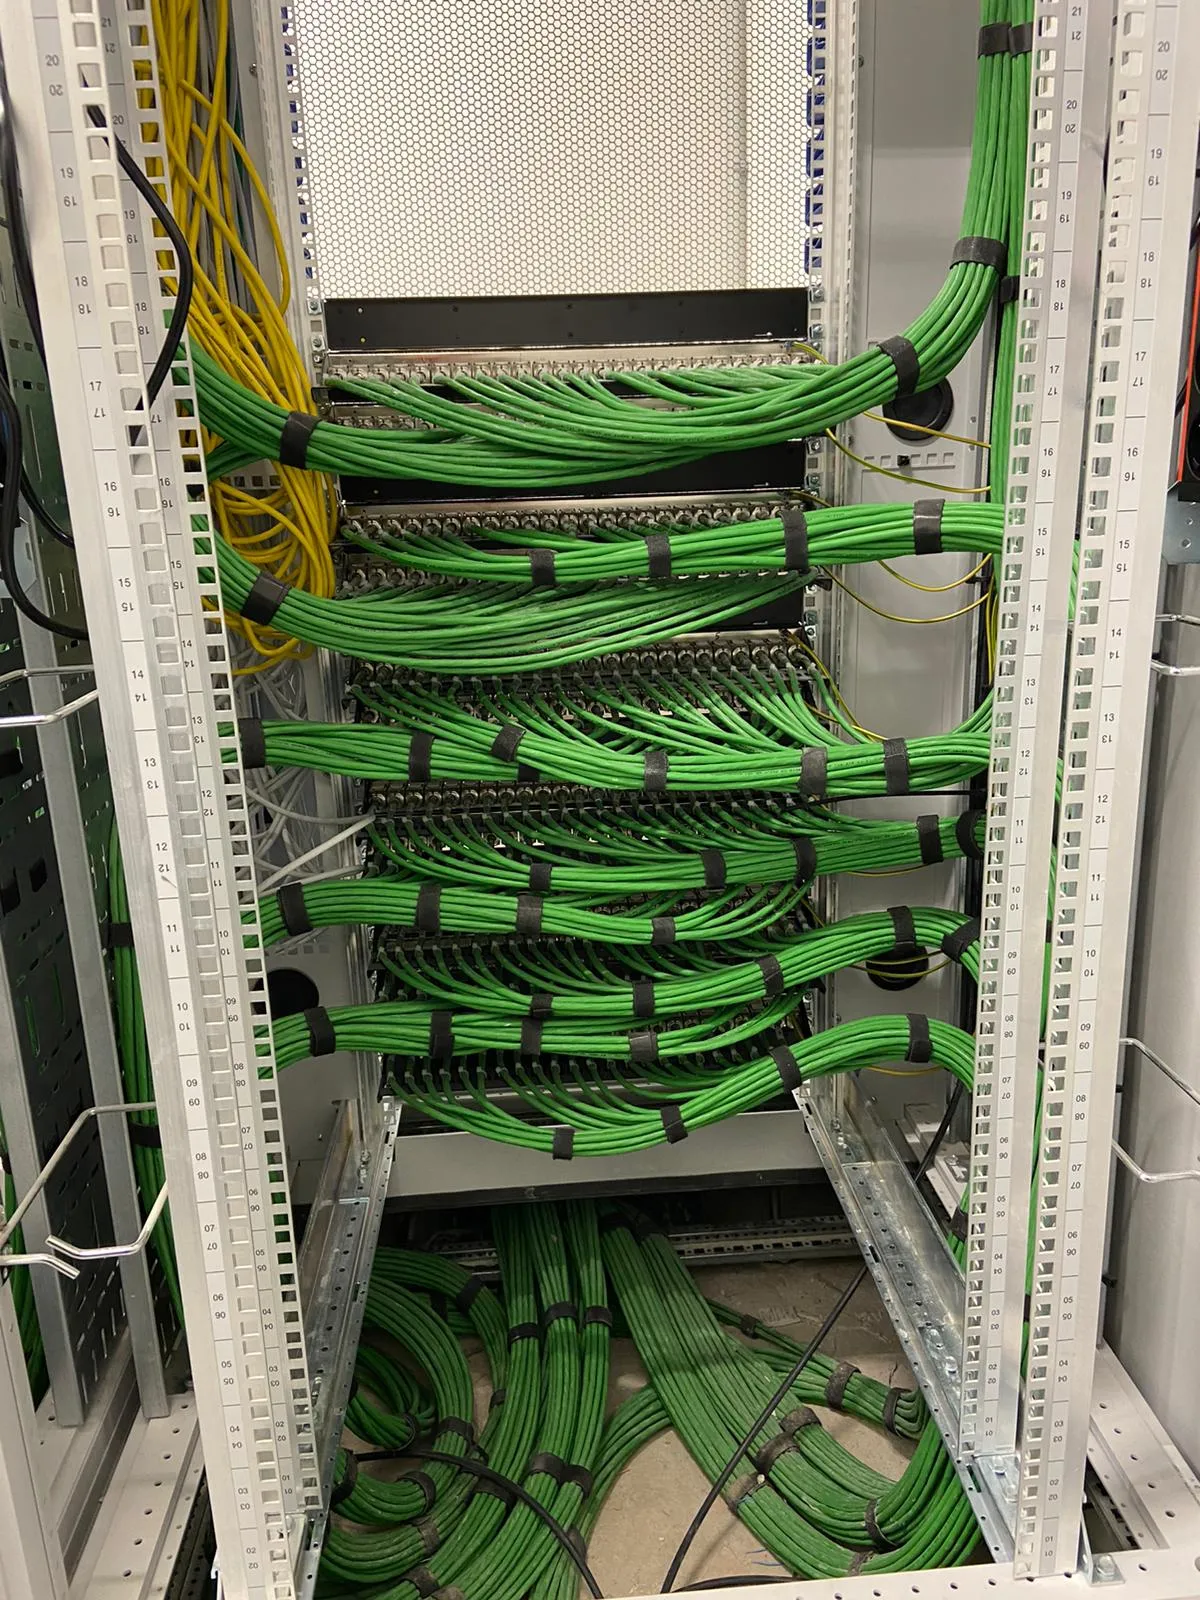 een afbeelding van een aantal groene kabels